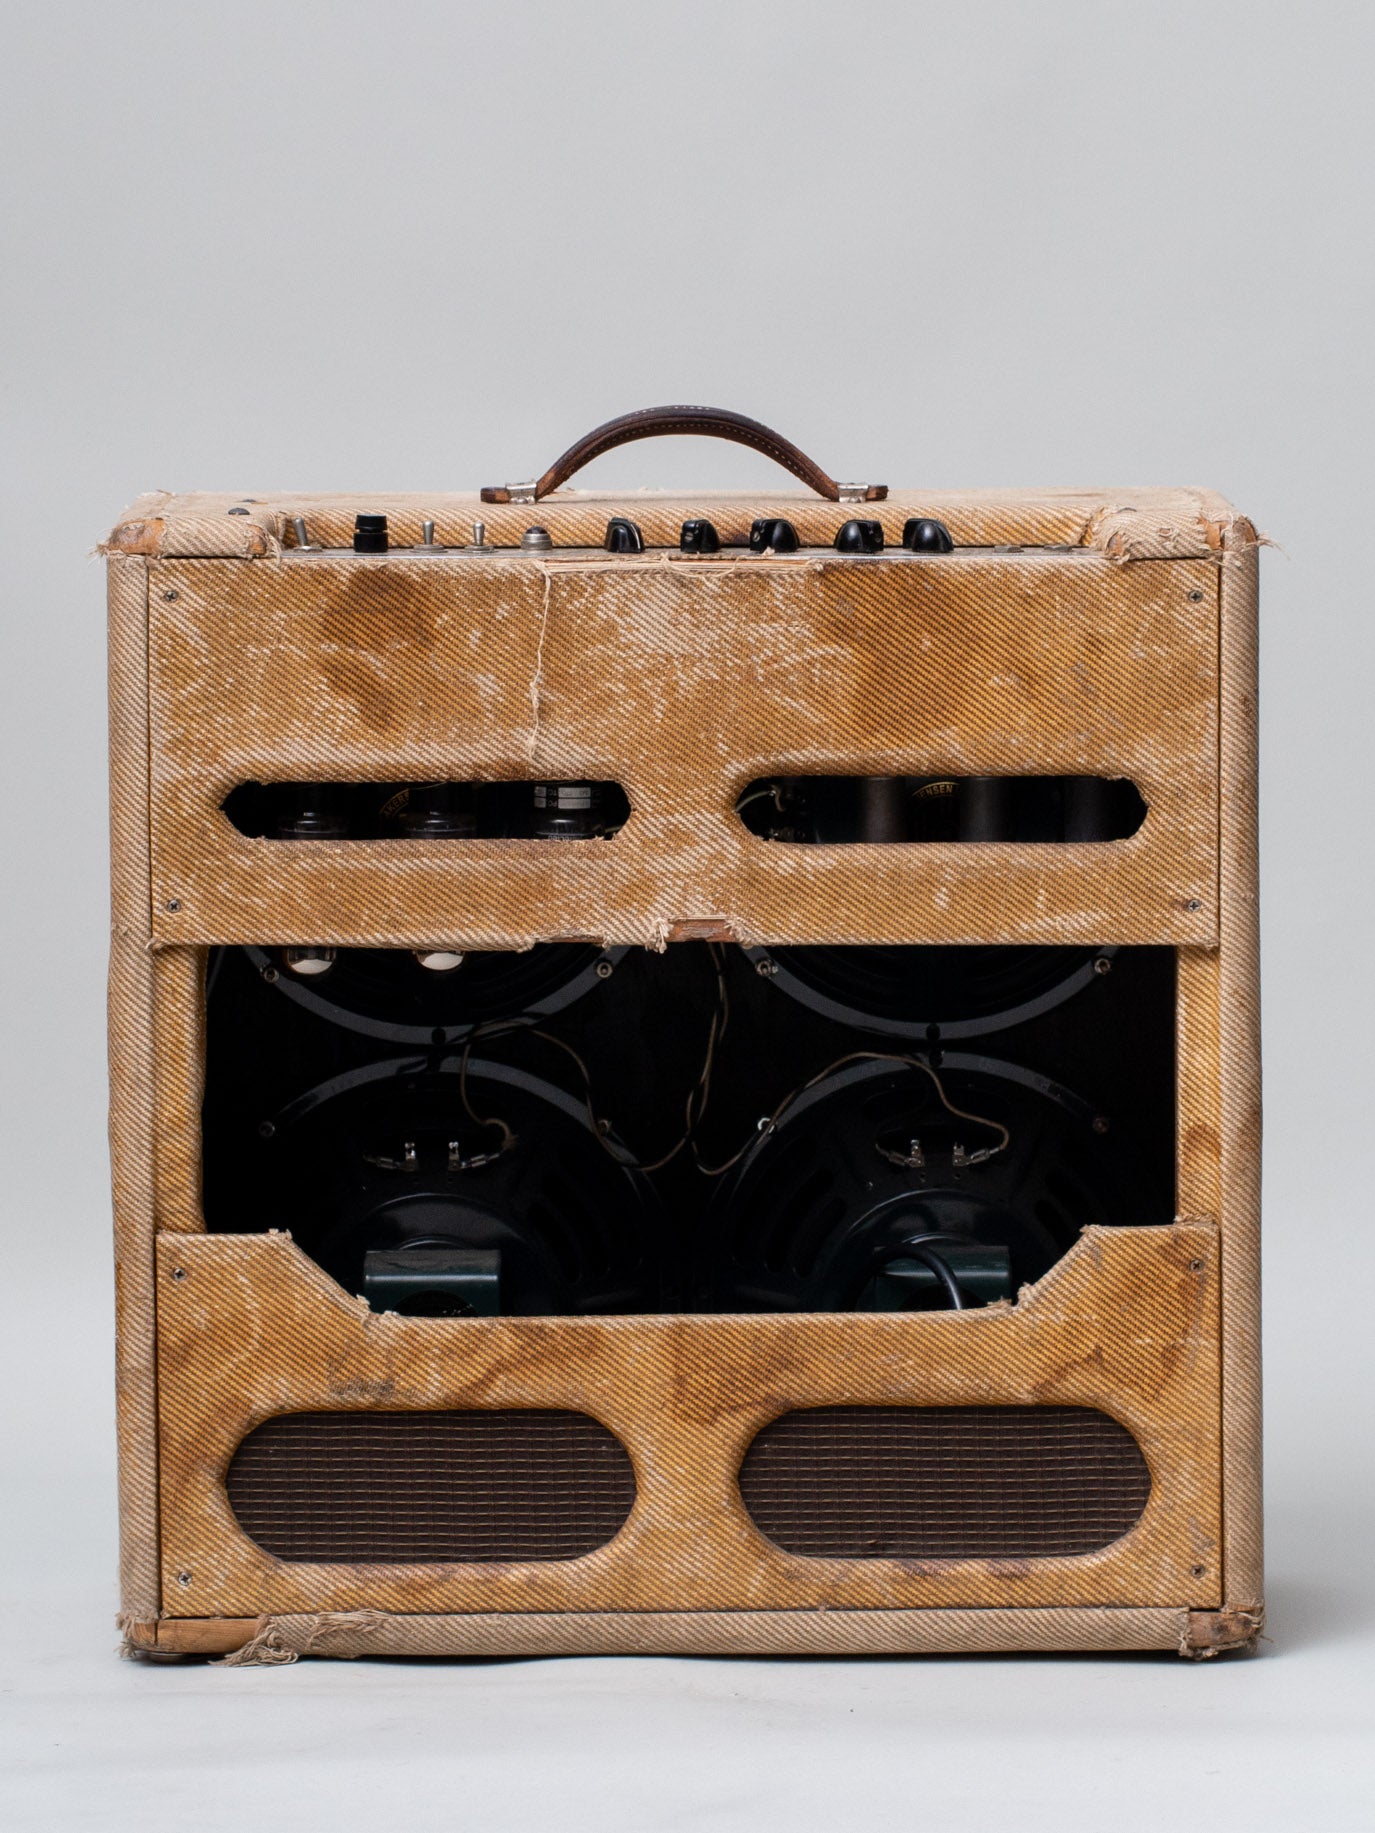 1956 Fender Bassman Amplifier